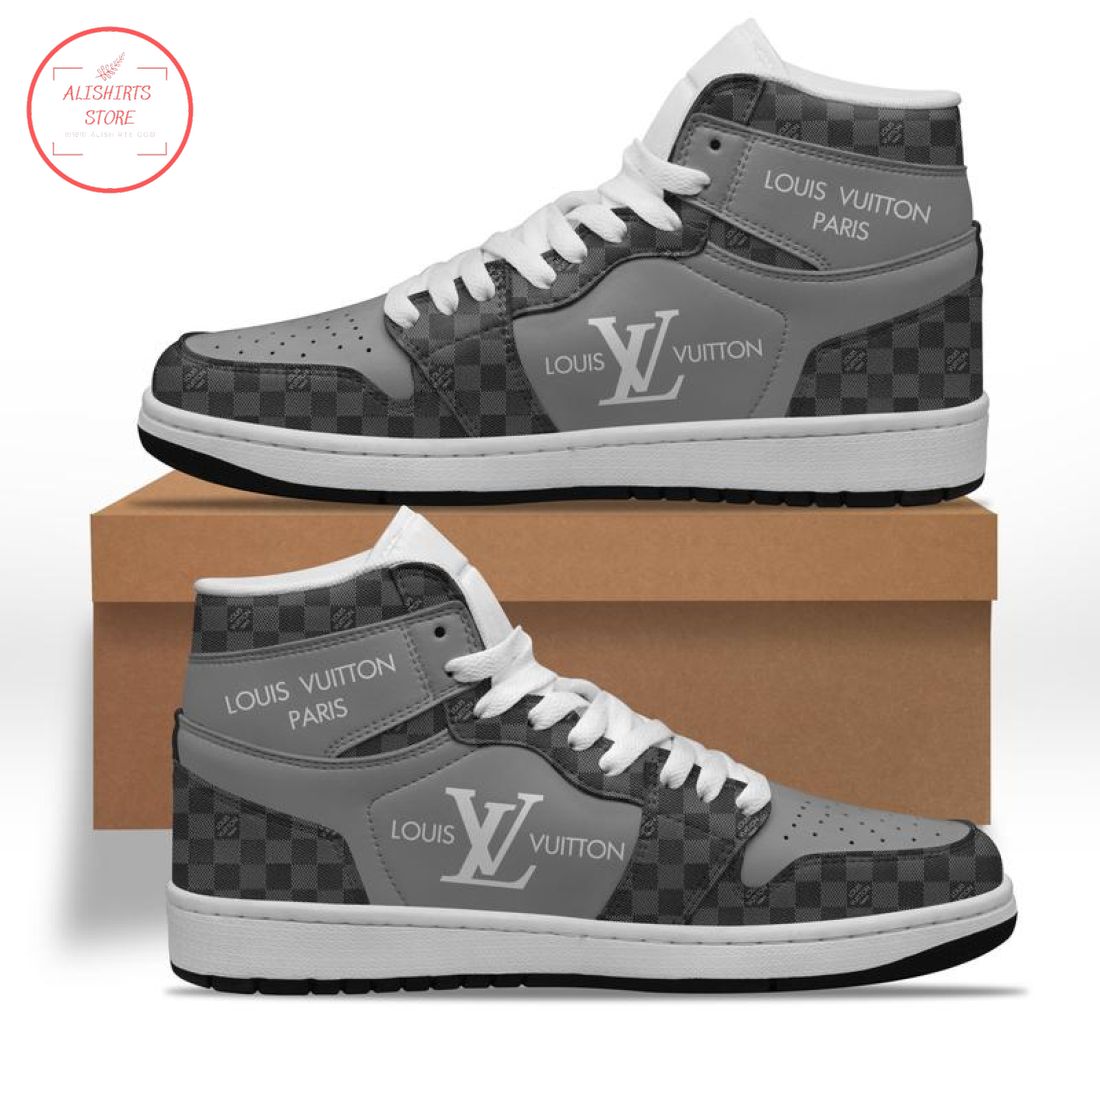 Louis Vuitton LV Paris Grey High Air Jordan 1 Sneakers